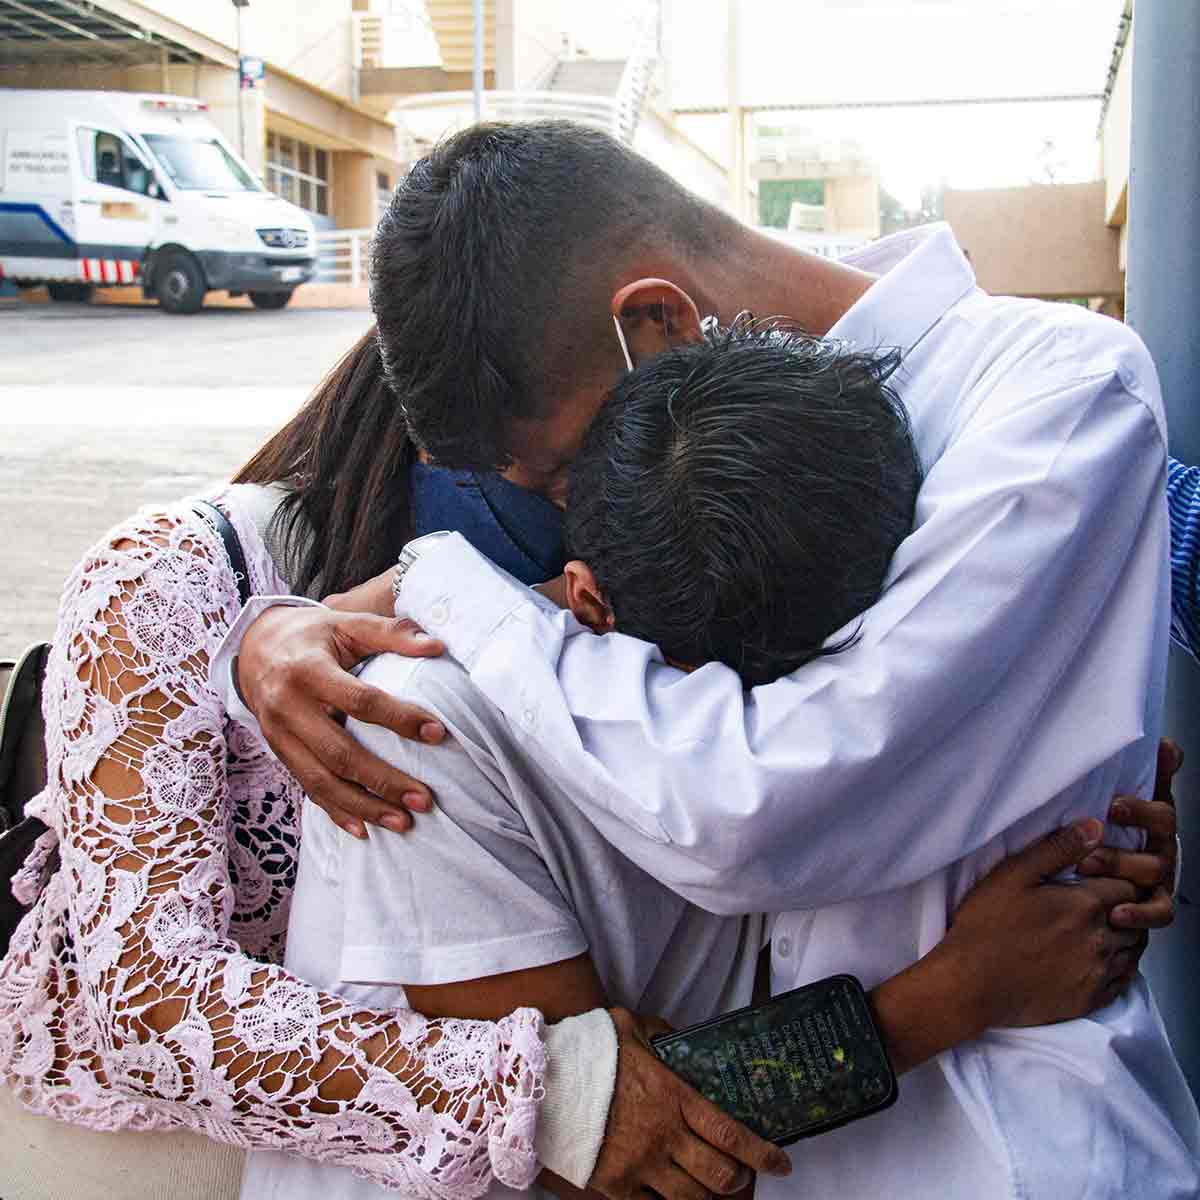 La familia de Isaac permanece unida después de que recibiera el alta del hospital. / Foto: Victor Xochipa